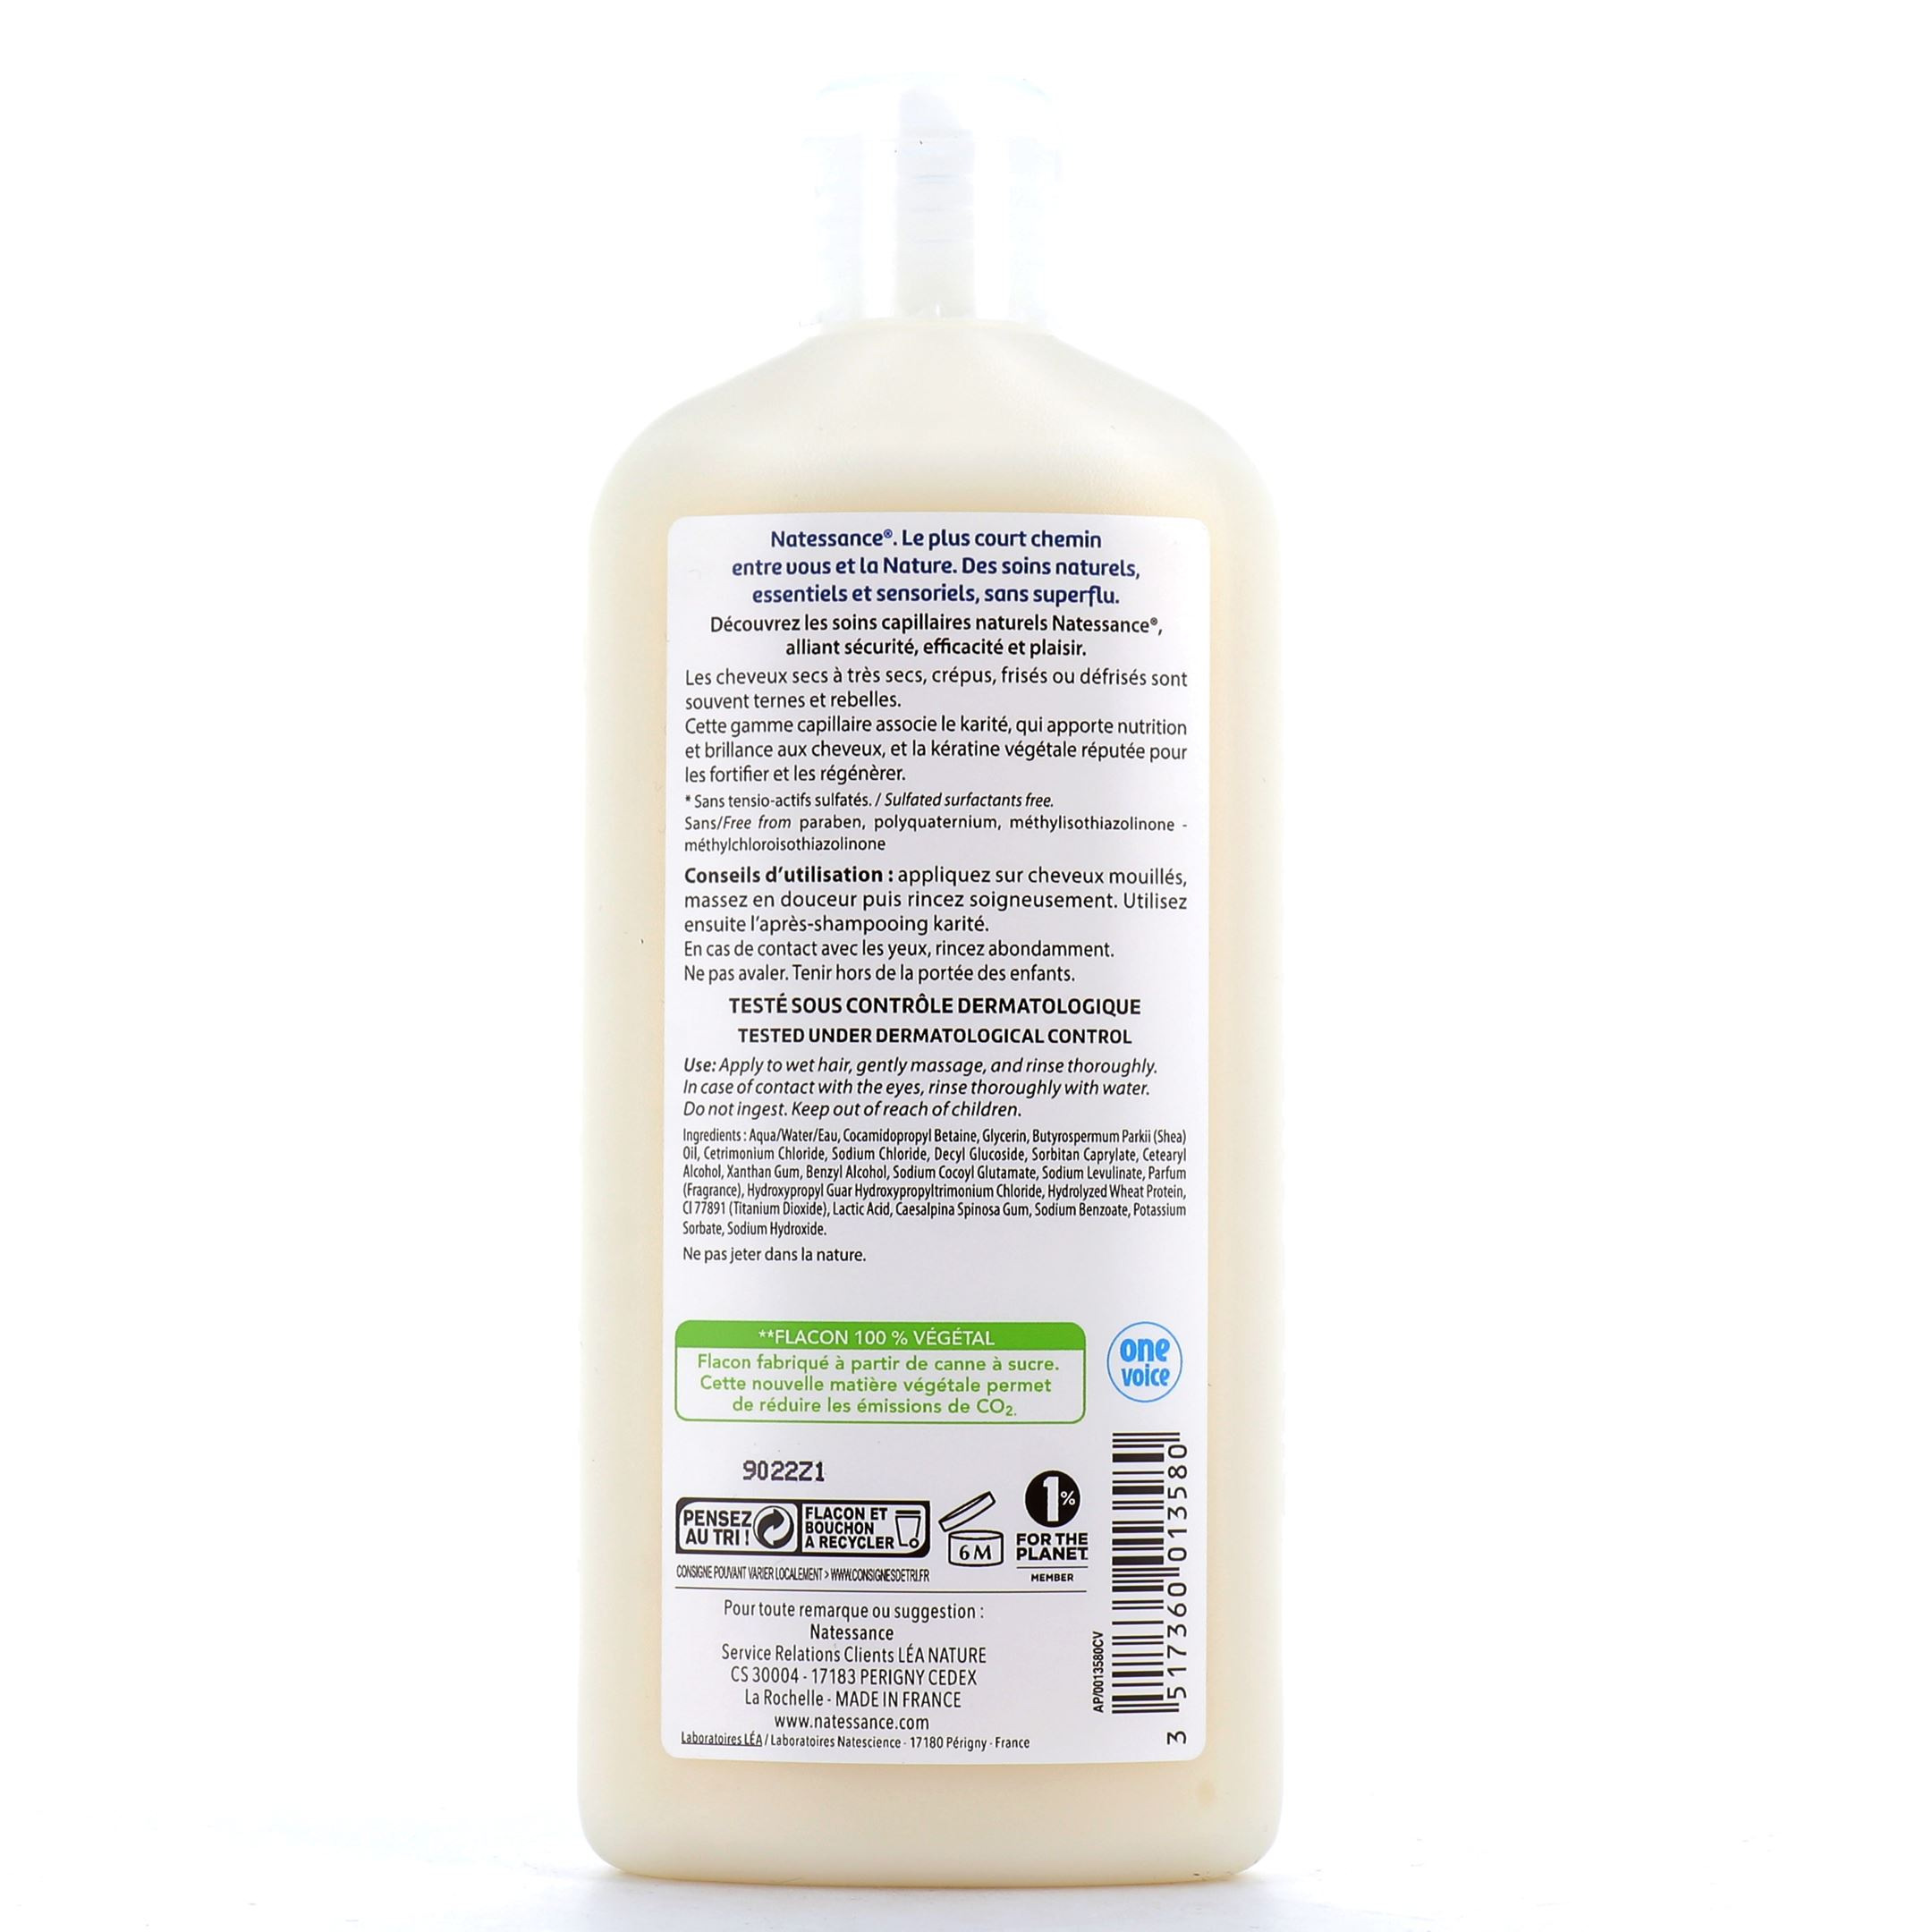 Natessance shampooing-douche verveine citronnée sans sulfates 1L